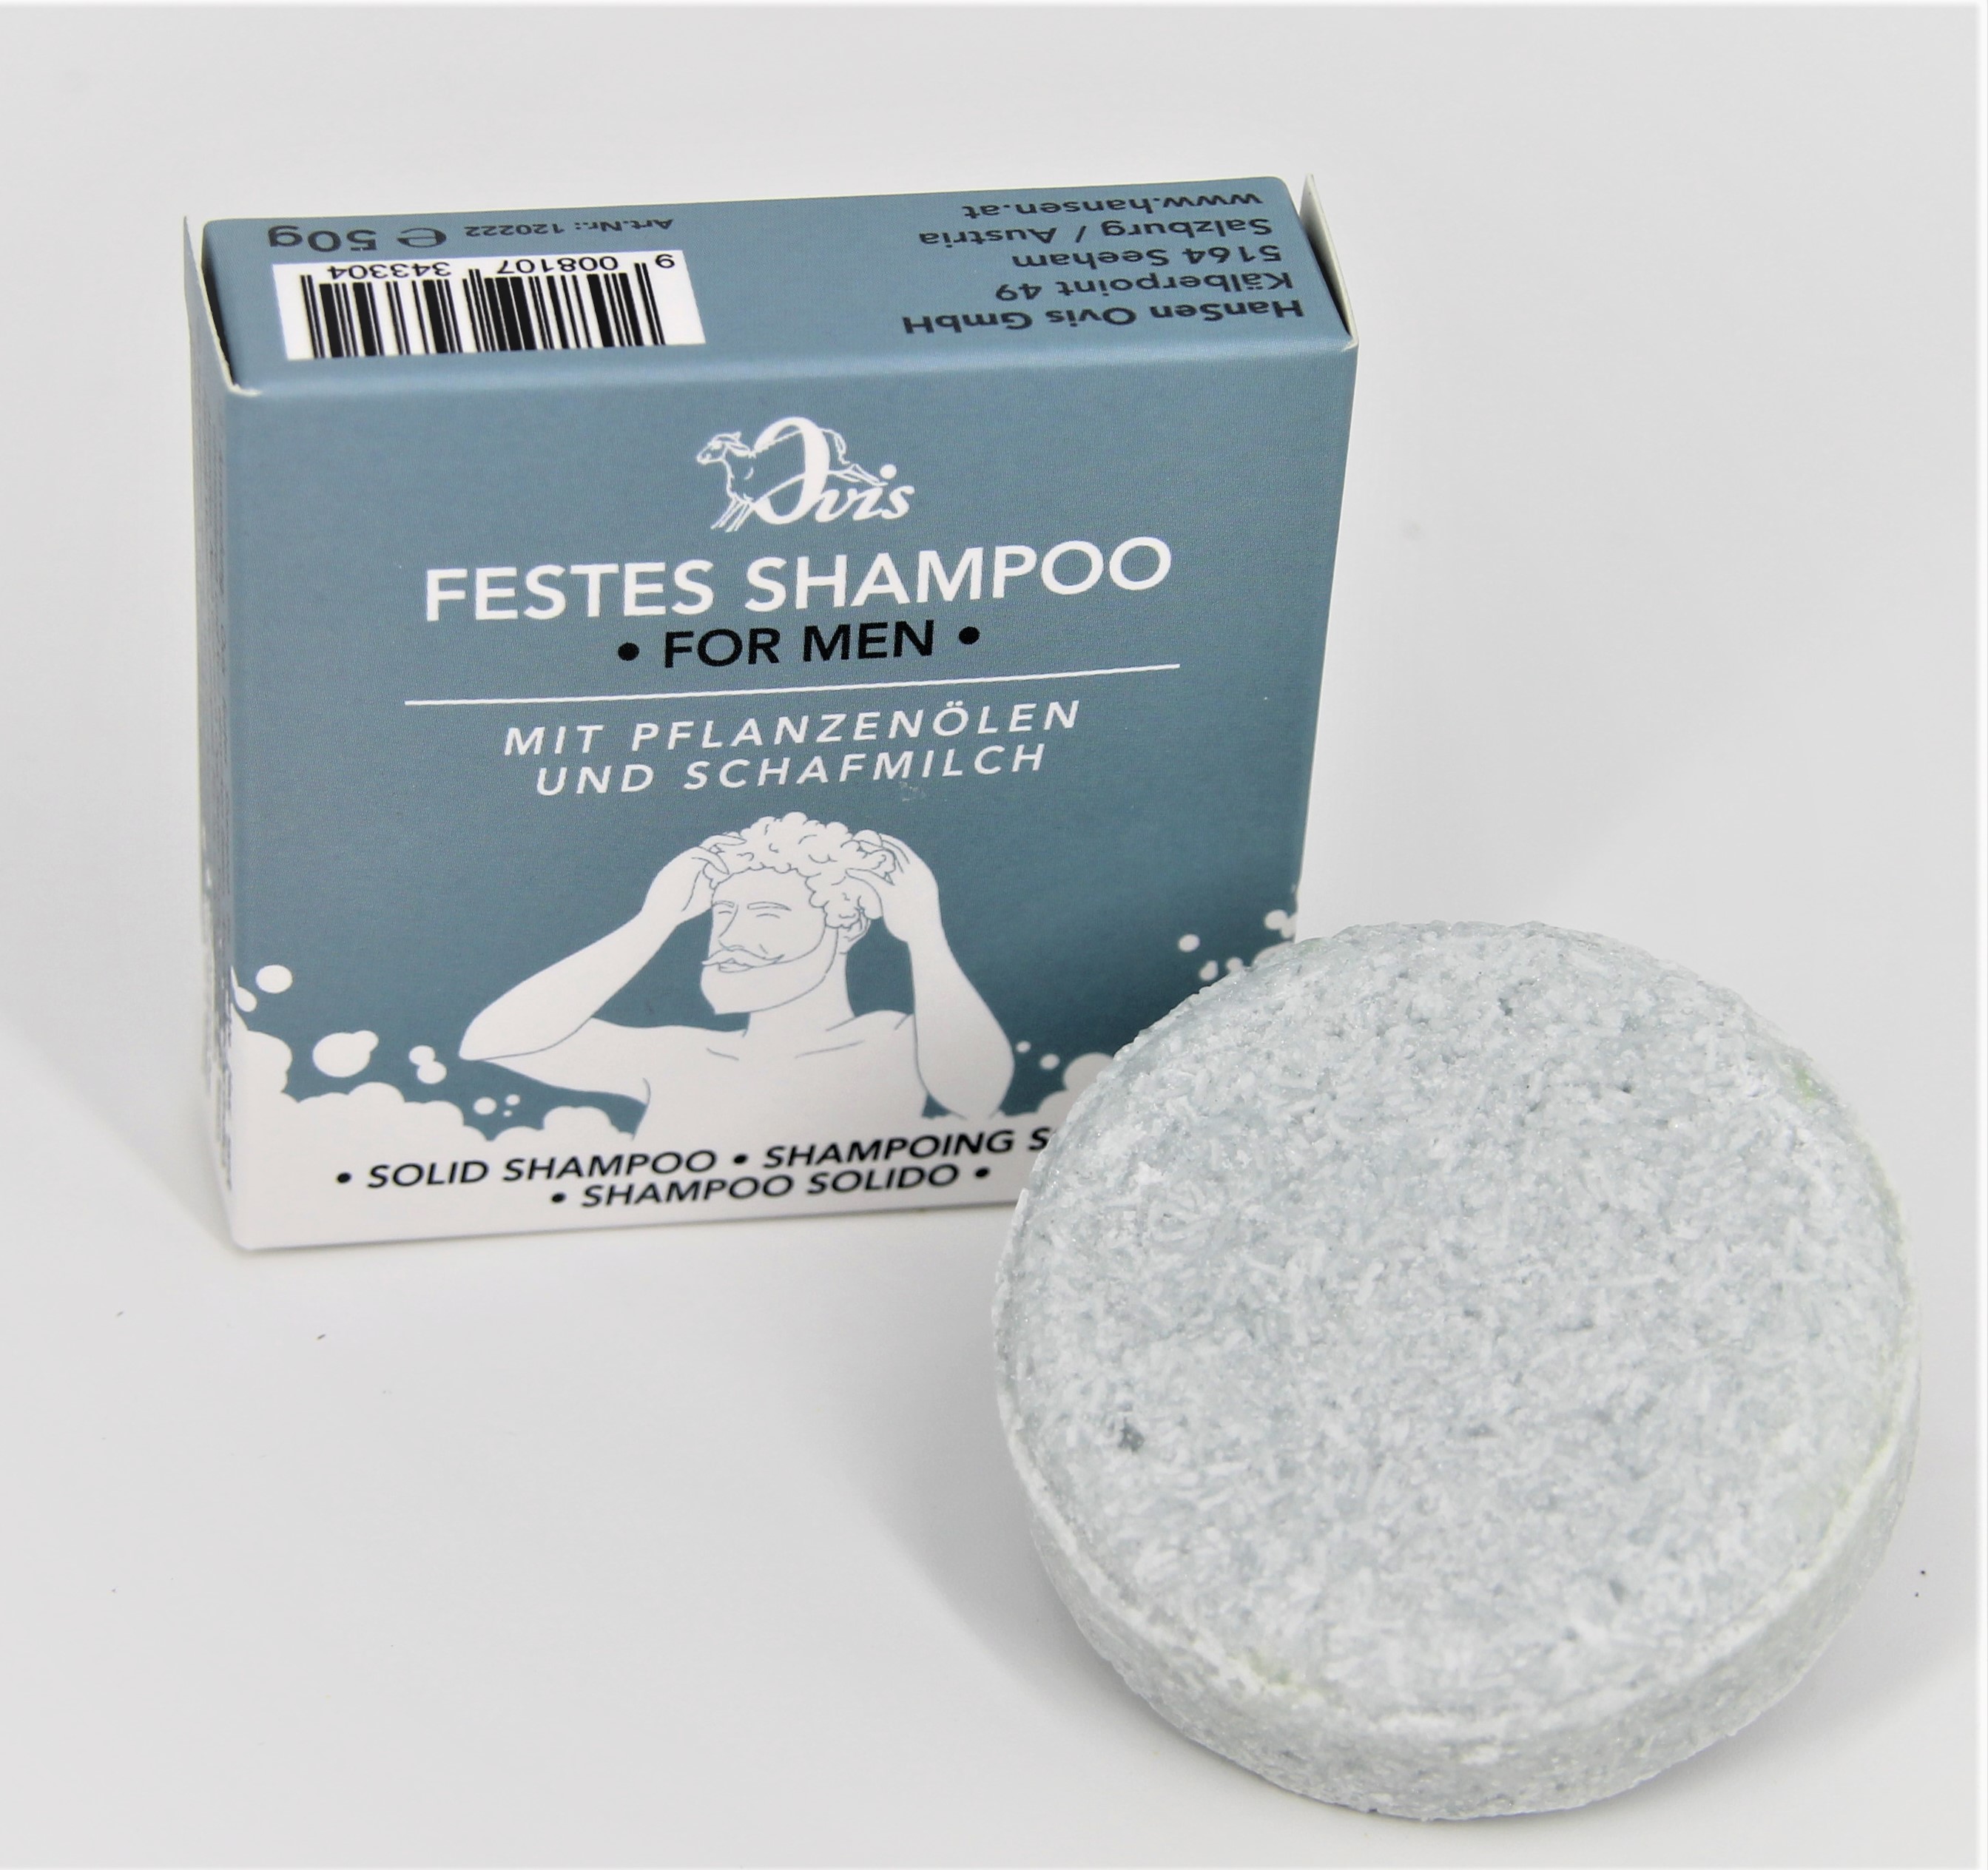 Festes Shampoo - For Men